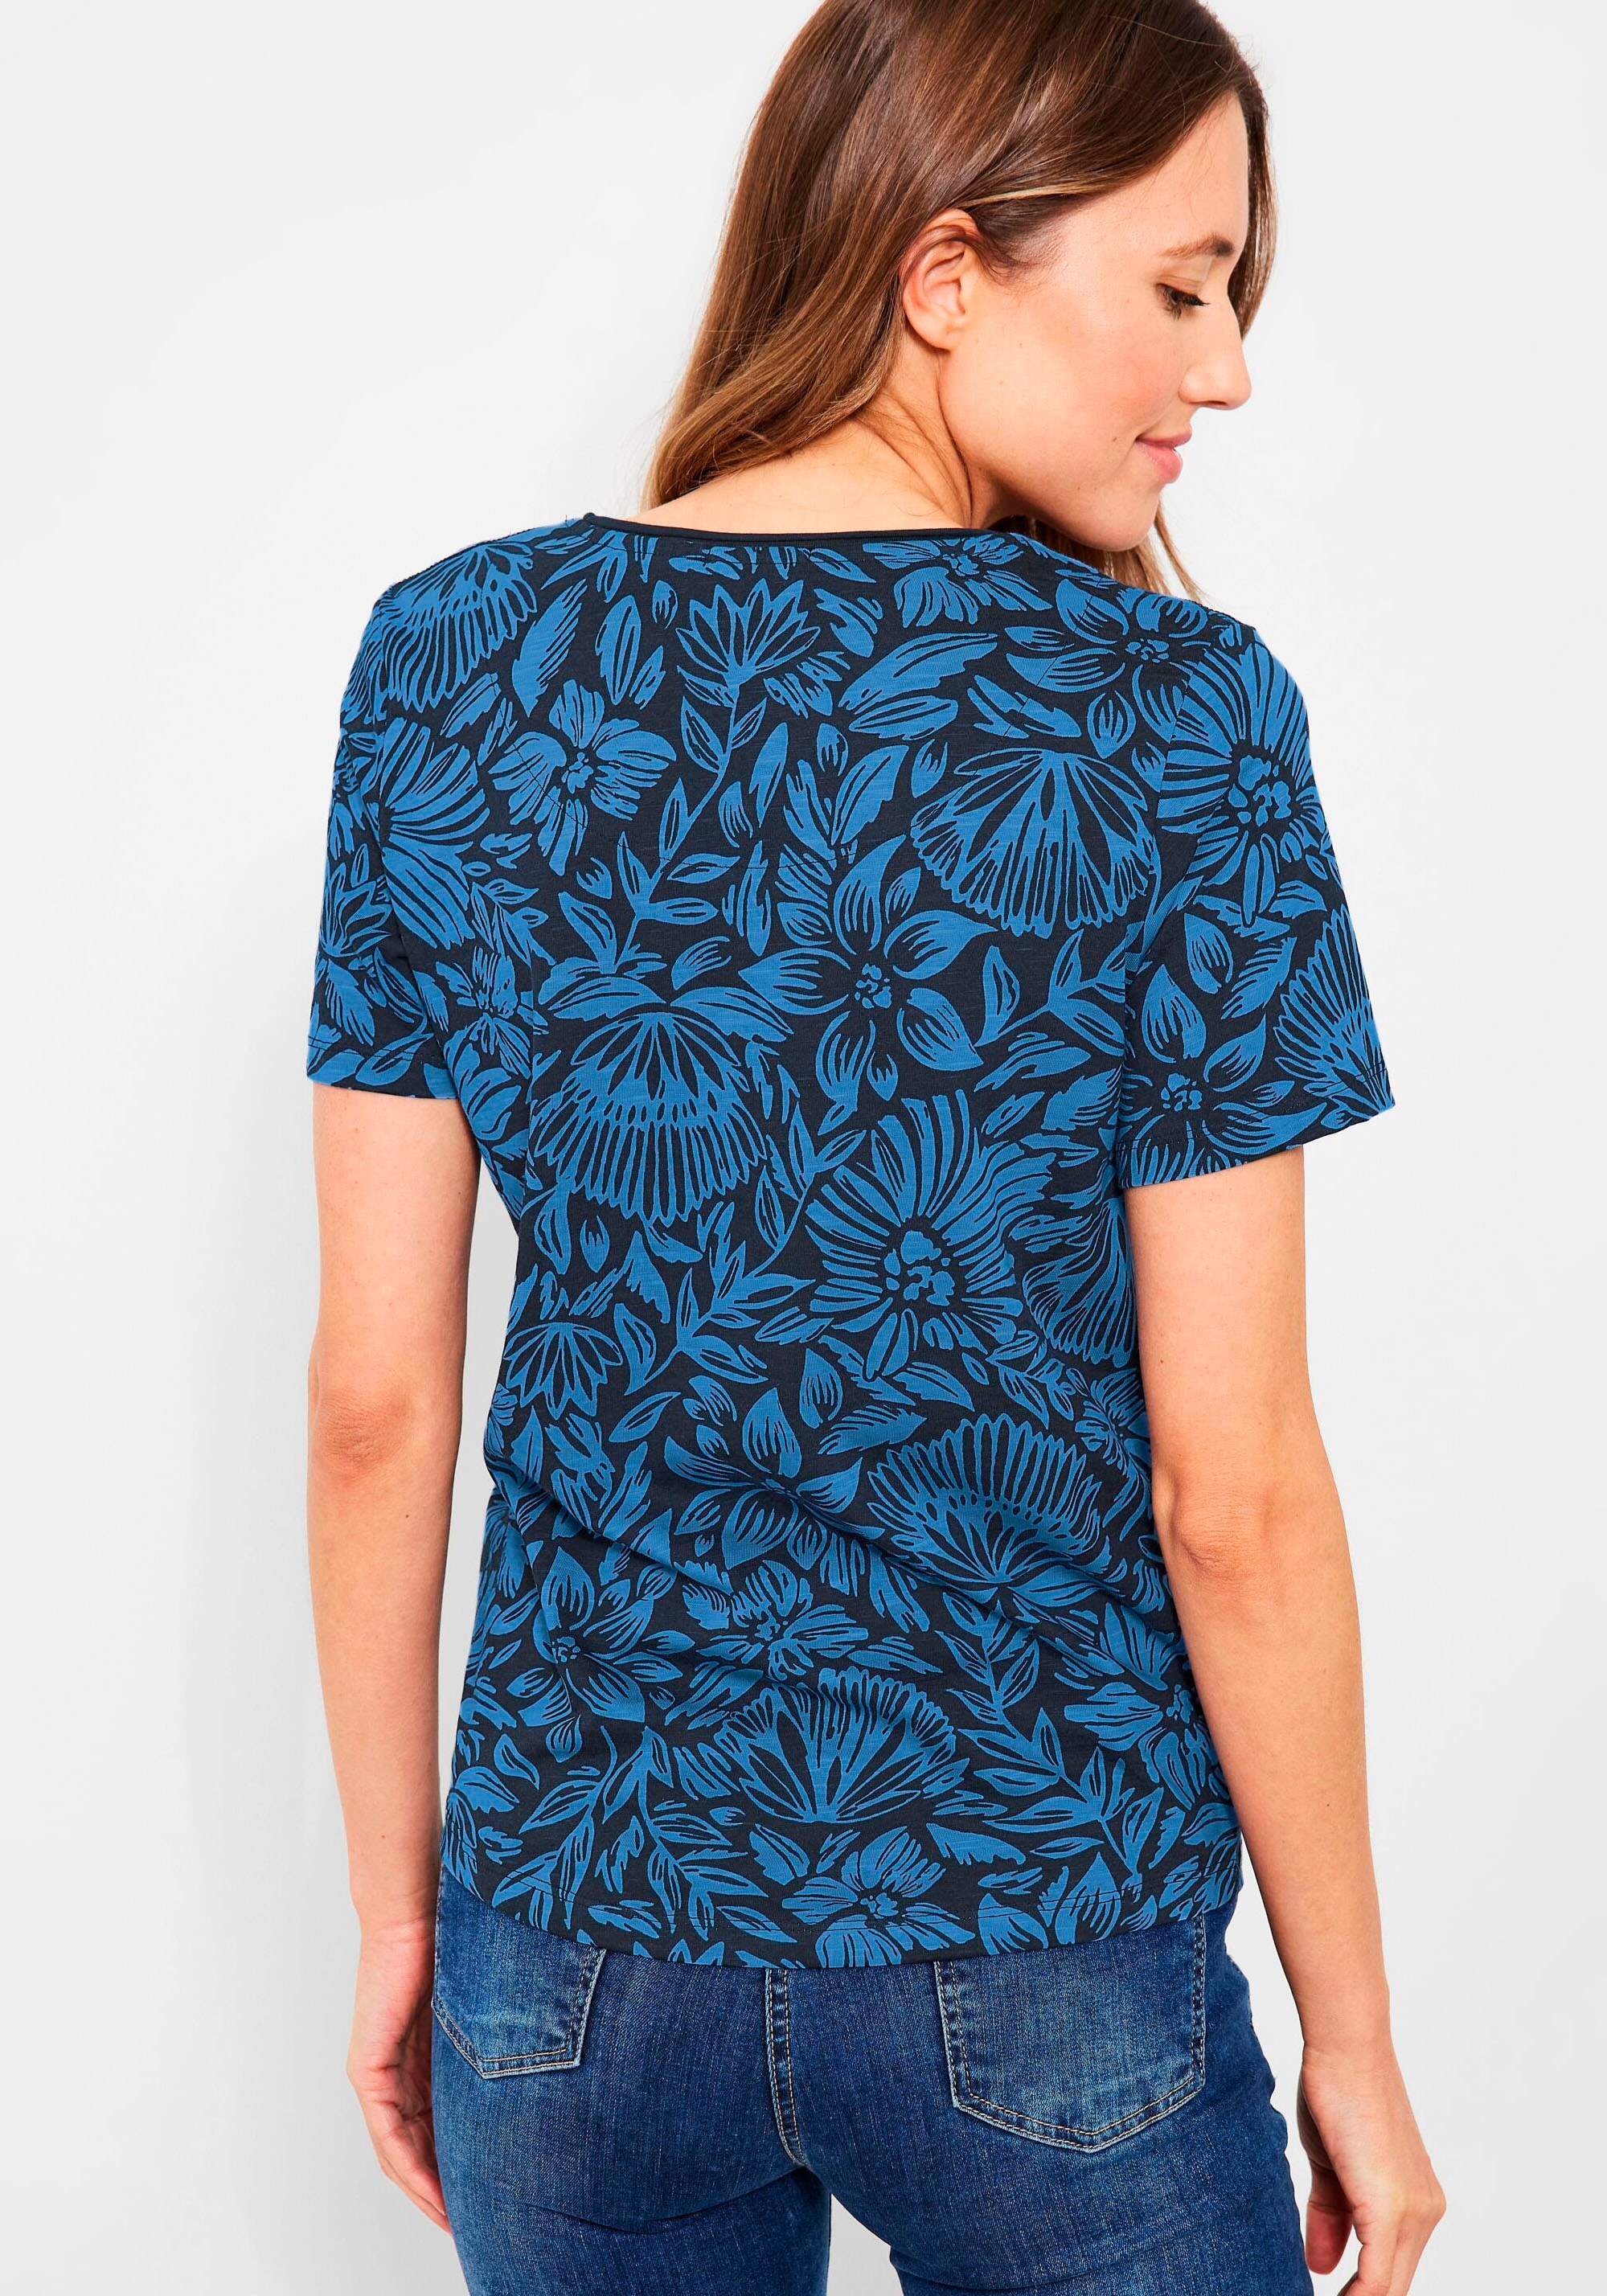 Cecil T-Shirt, mit sommerlichem Alloverdruck bei OTTOversand